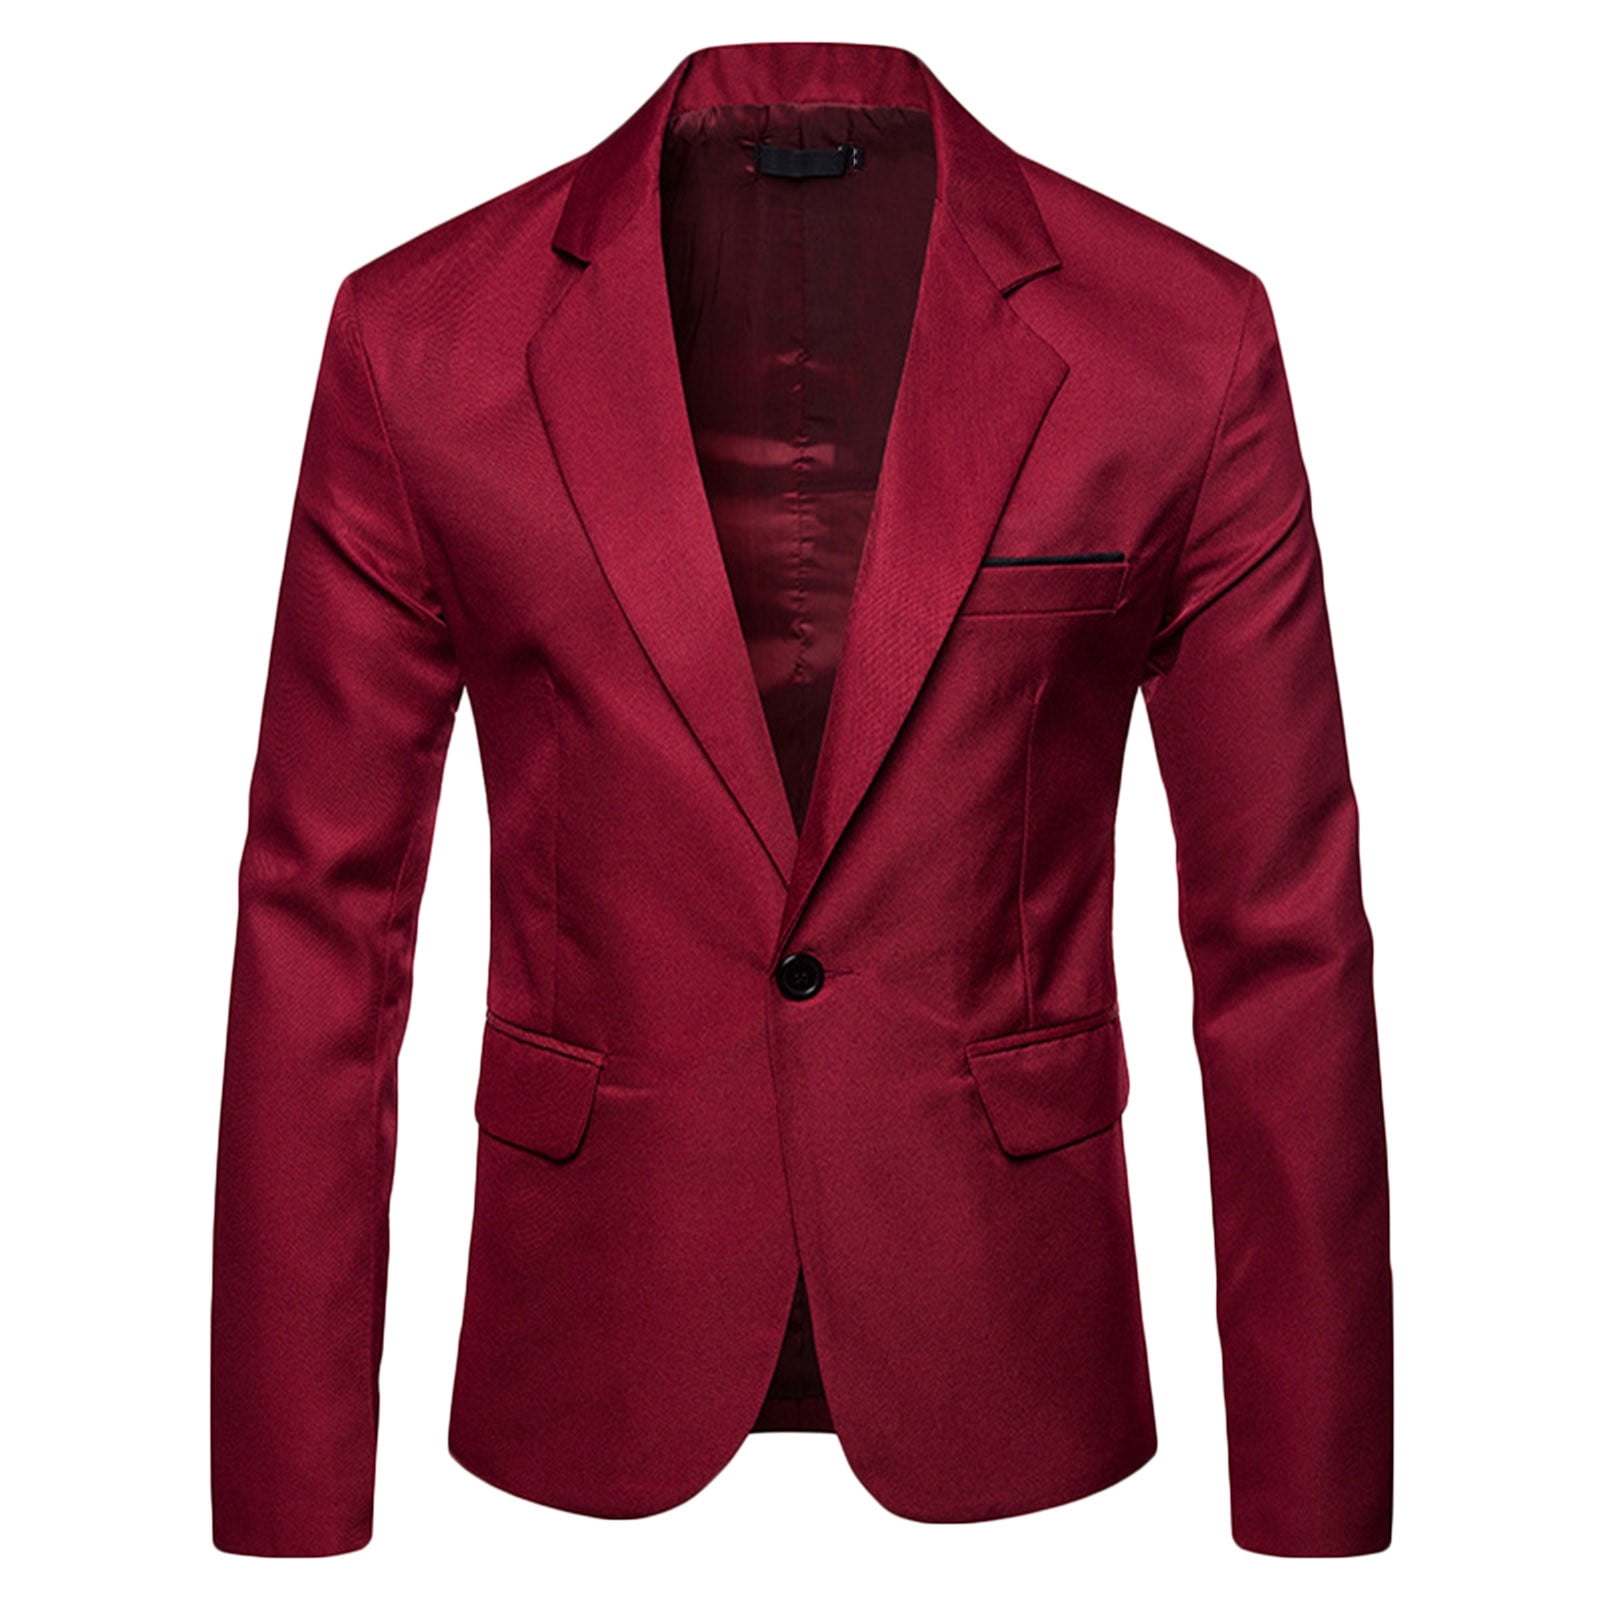 Tuxedo Action Men's Classic Suits Burgundy Red Tuxedo | Suite di nozze,  Vestiti eleganti da uomo, Abiti